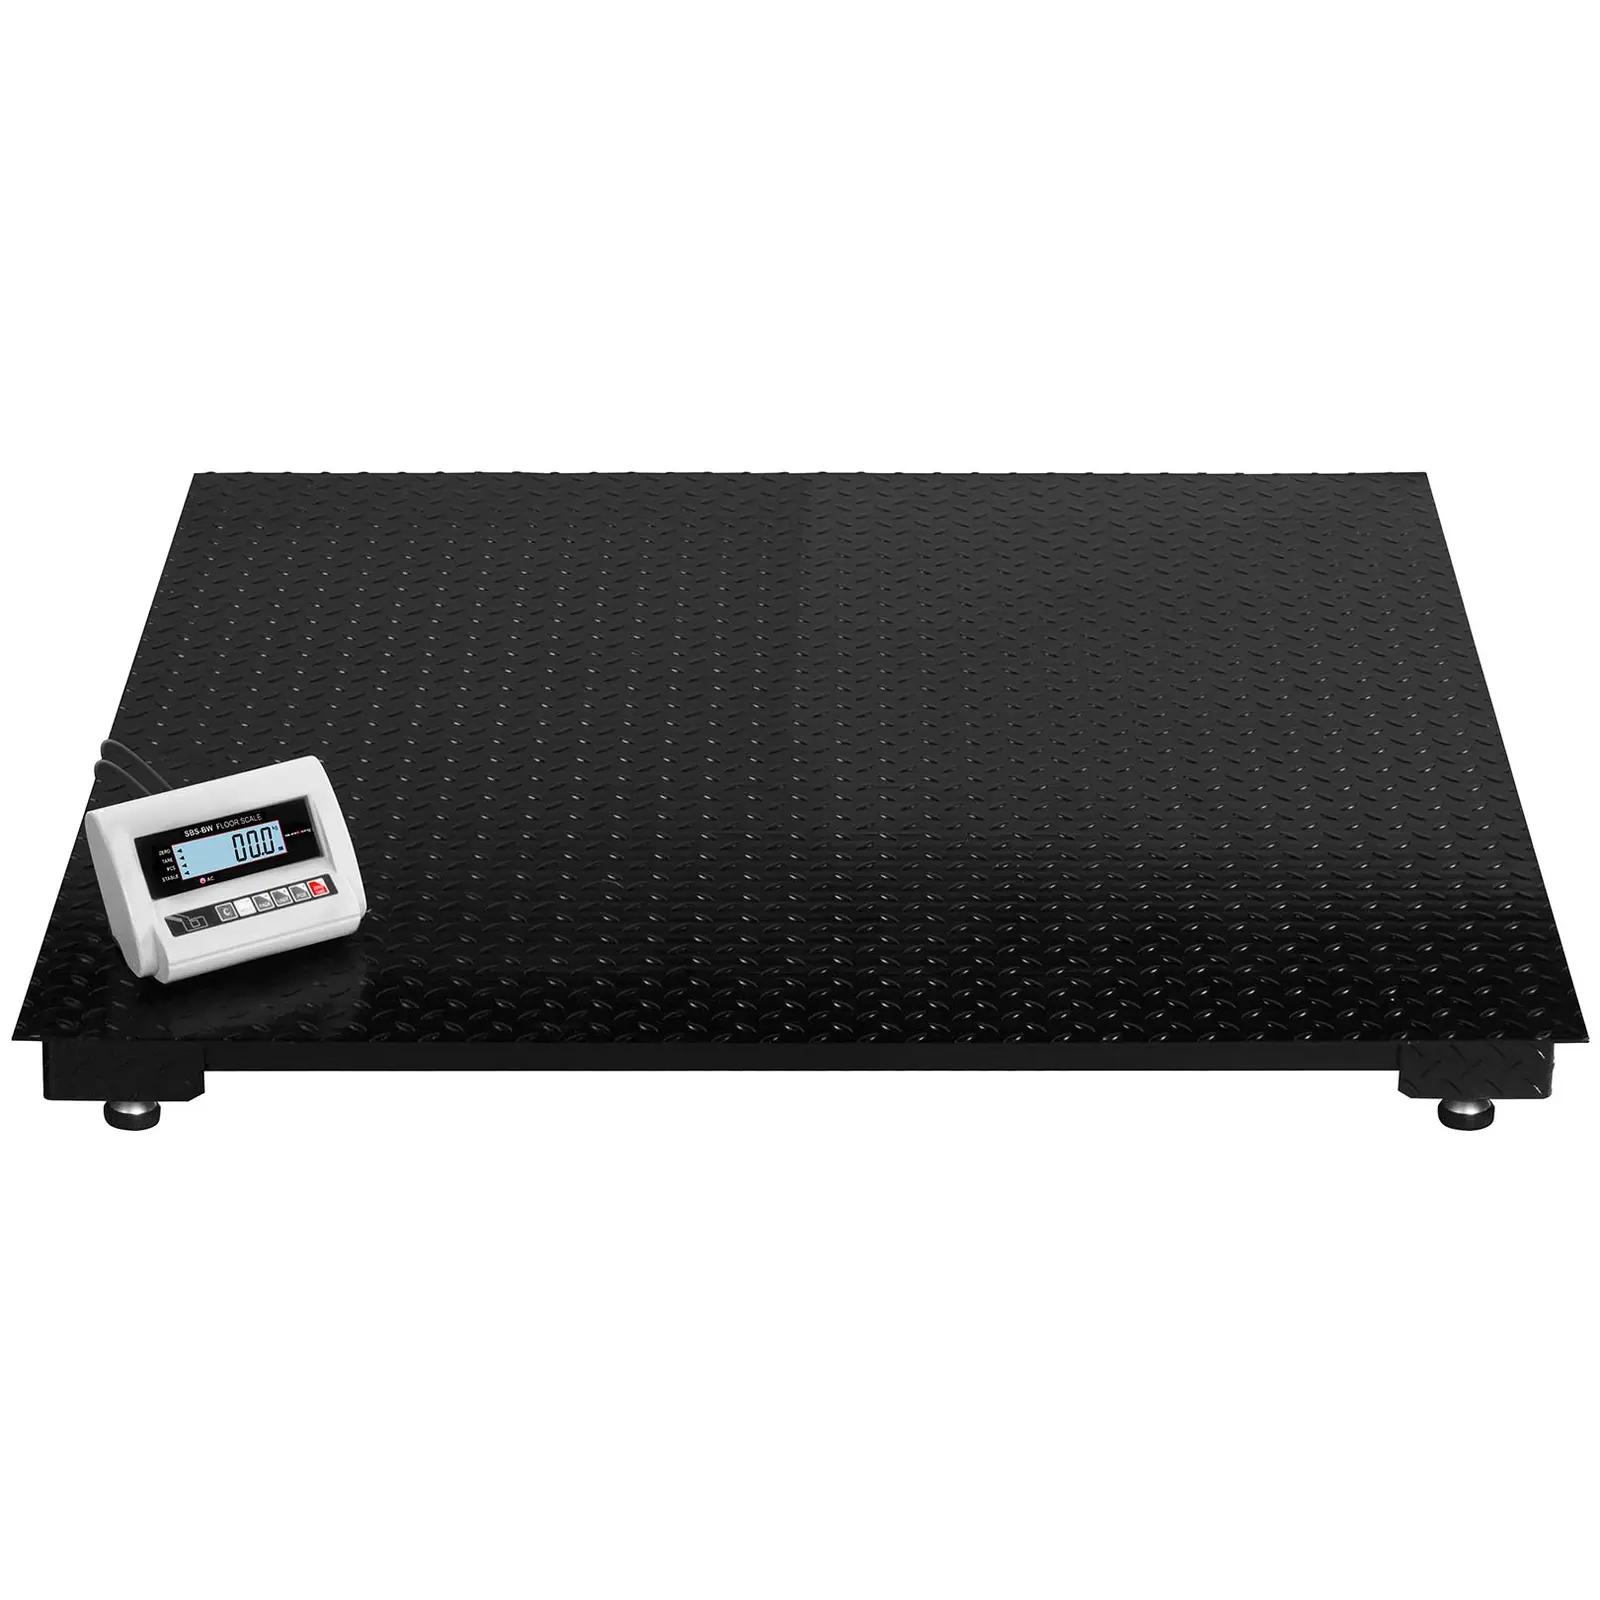 Balança de chão - 5 t / 2 kg - LCD